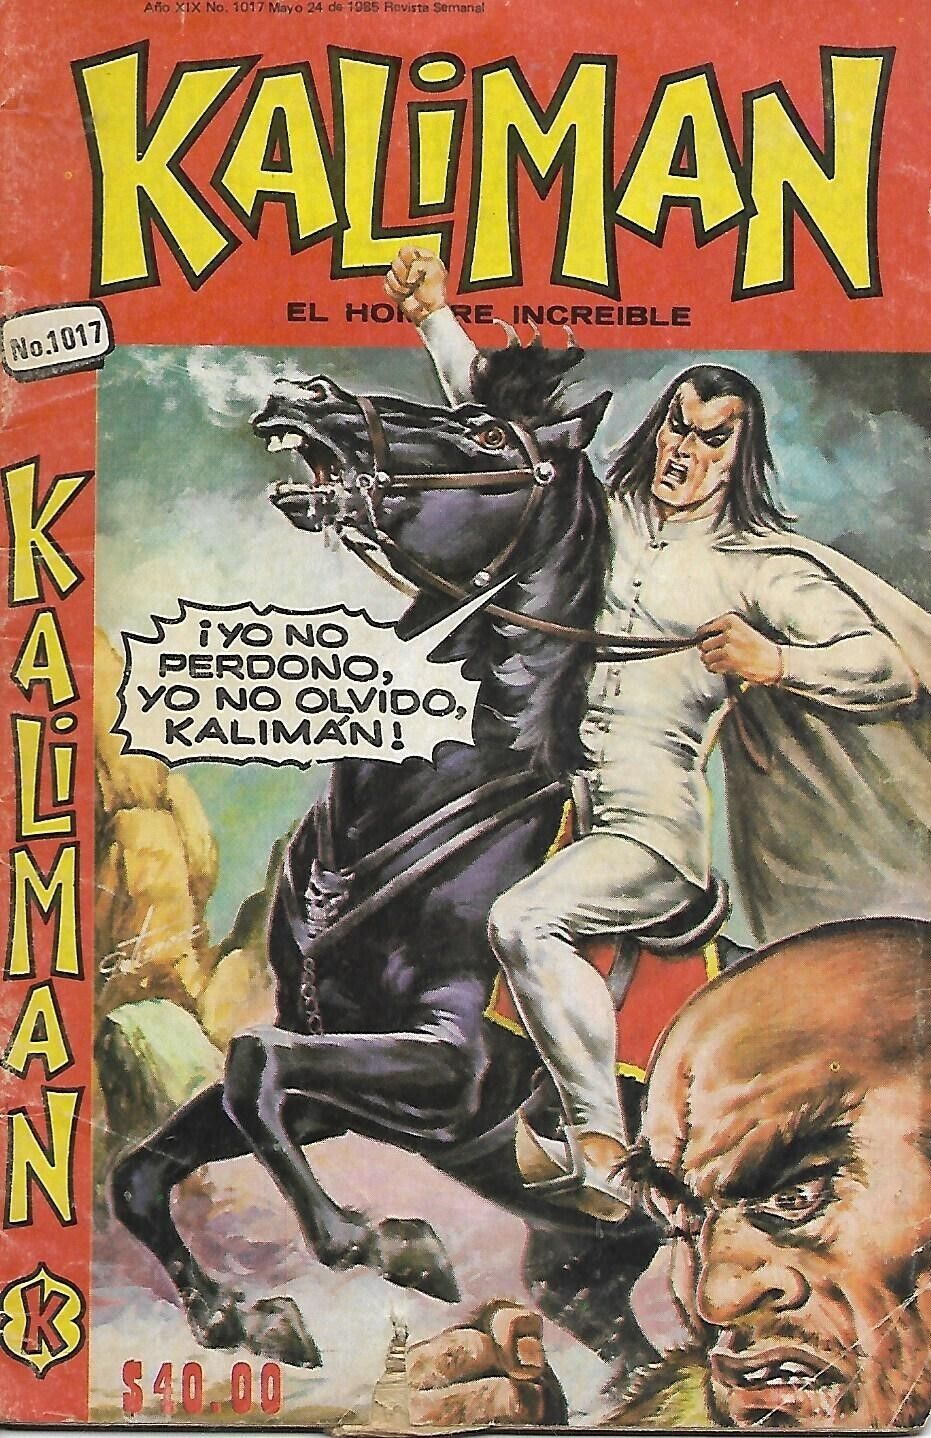 Kaliman El Hombre Increible #1017 - Mayo 24, 1985 - Mexico